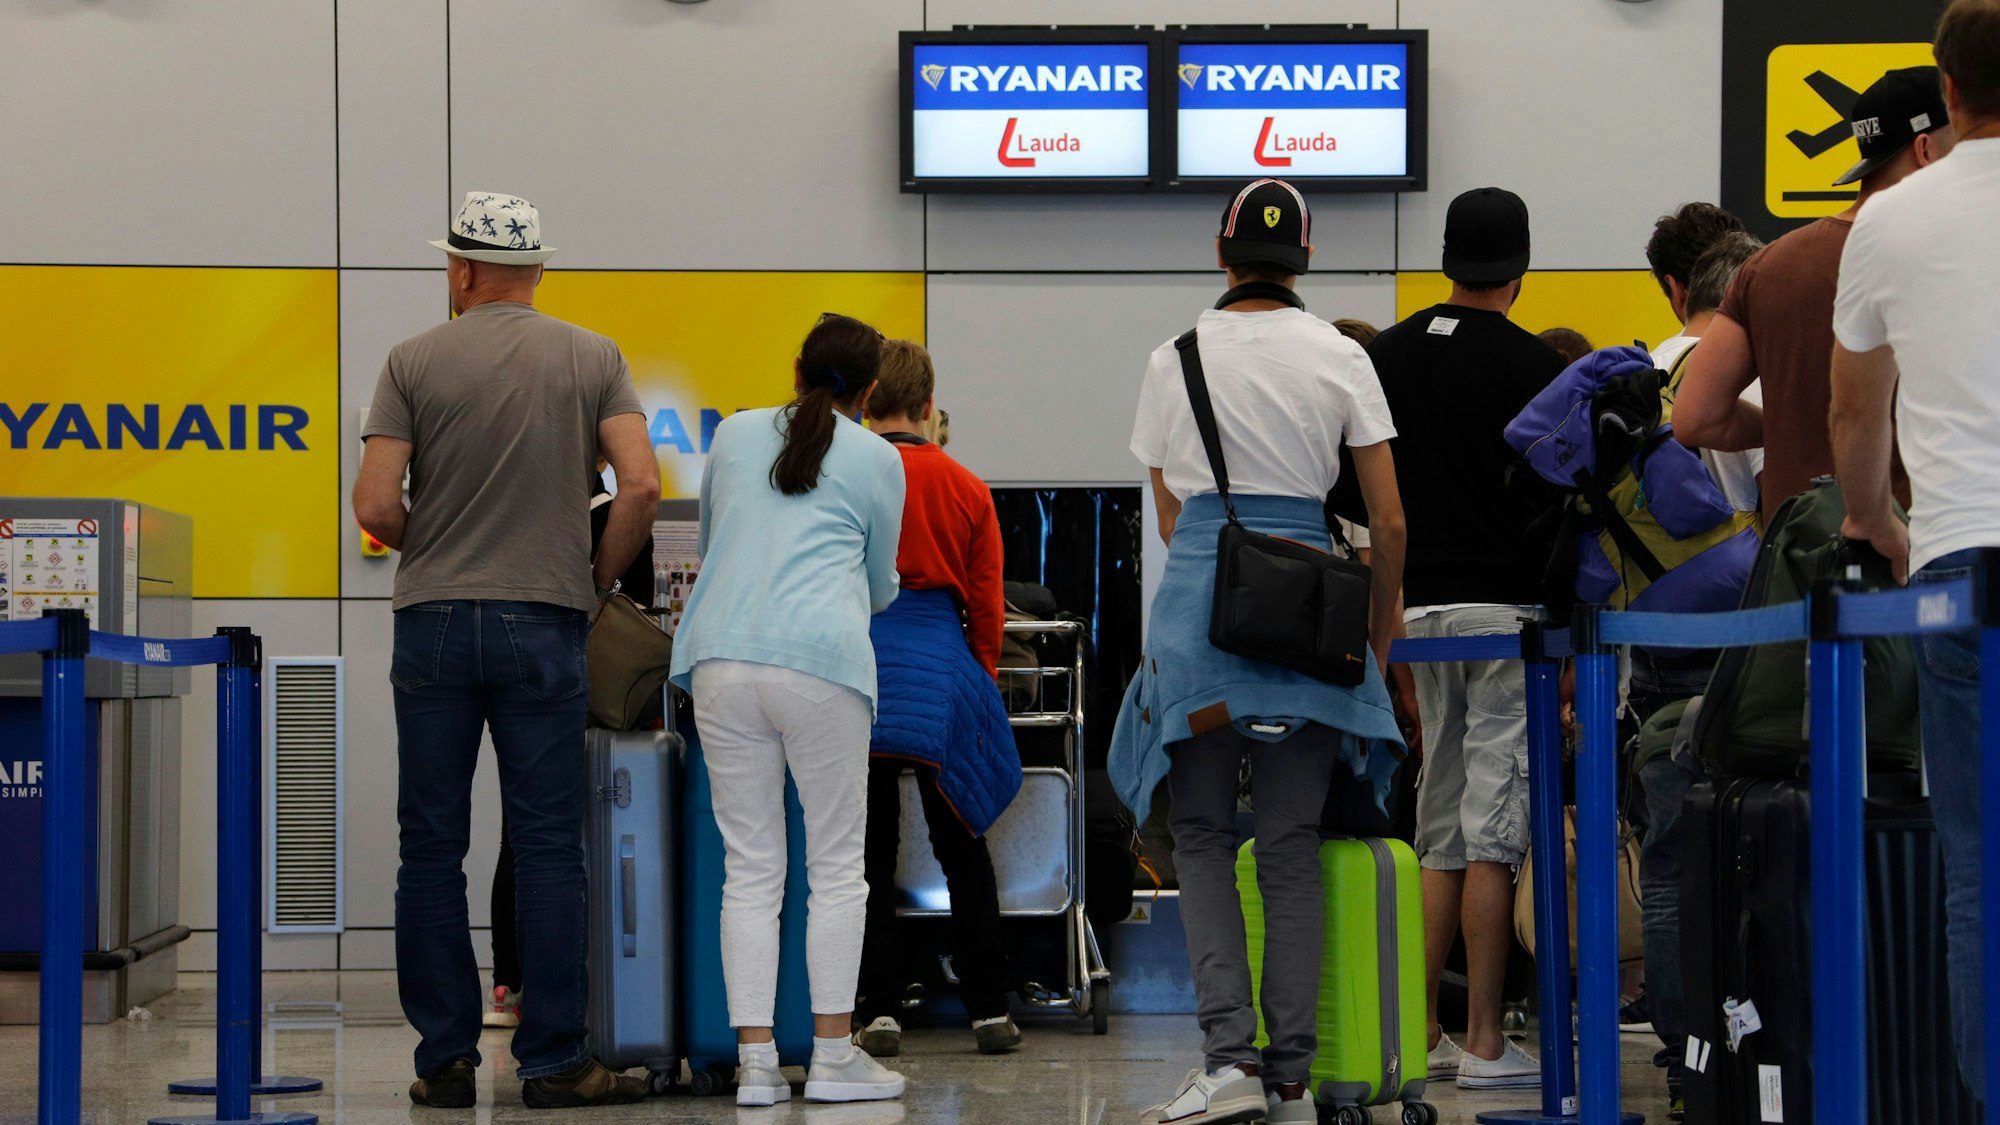 Passagiere stehen am Flughafen Palma de Mallorca am Abfertigungsschalter der Fluggesellschaft Ryanair (Archivfoto 2019). Ein Mann ist am Schalter ausgerastet und zerlegte das Mobiliar.